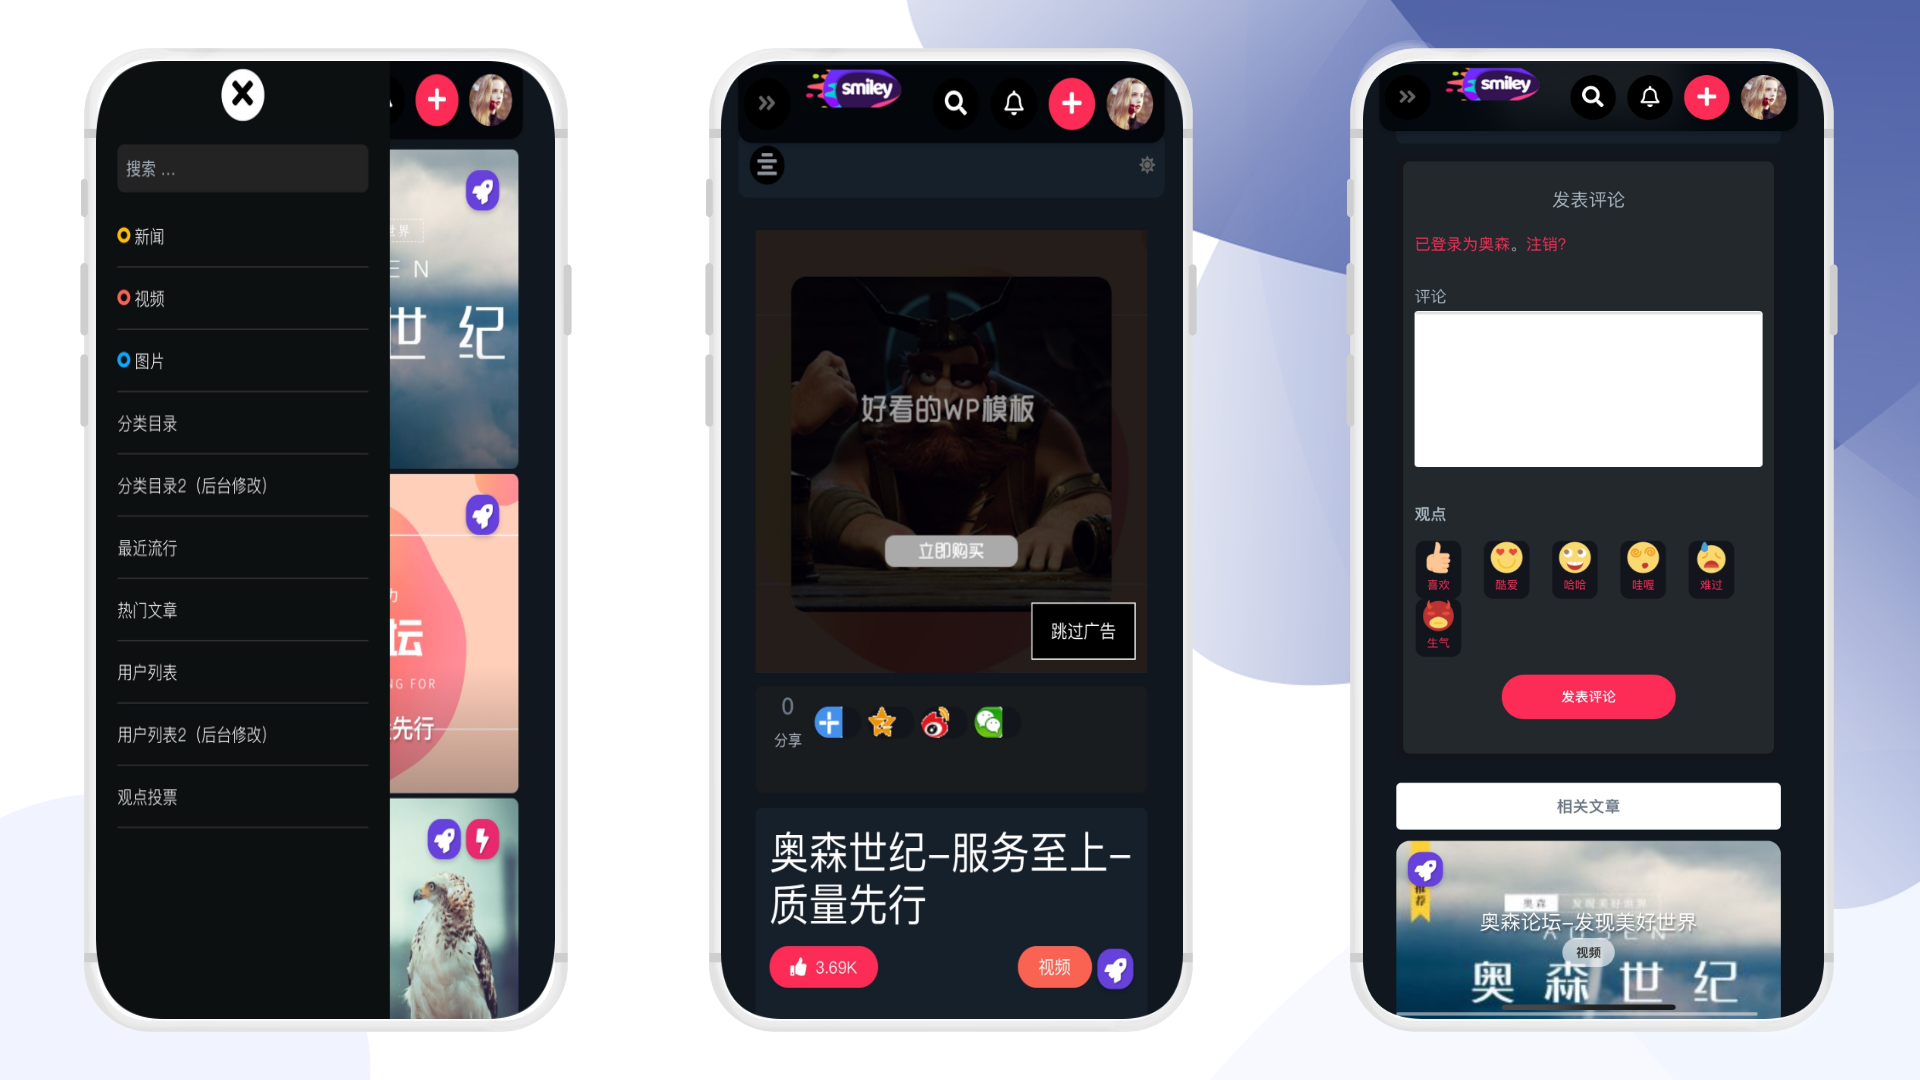 互联网app产品介绍PPT (2).png